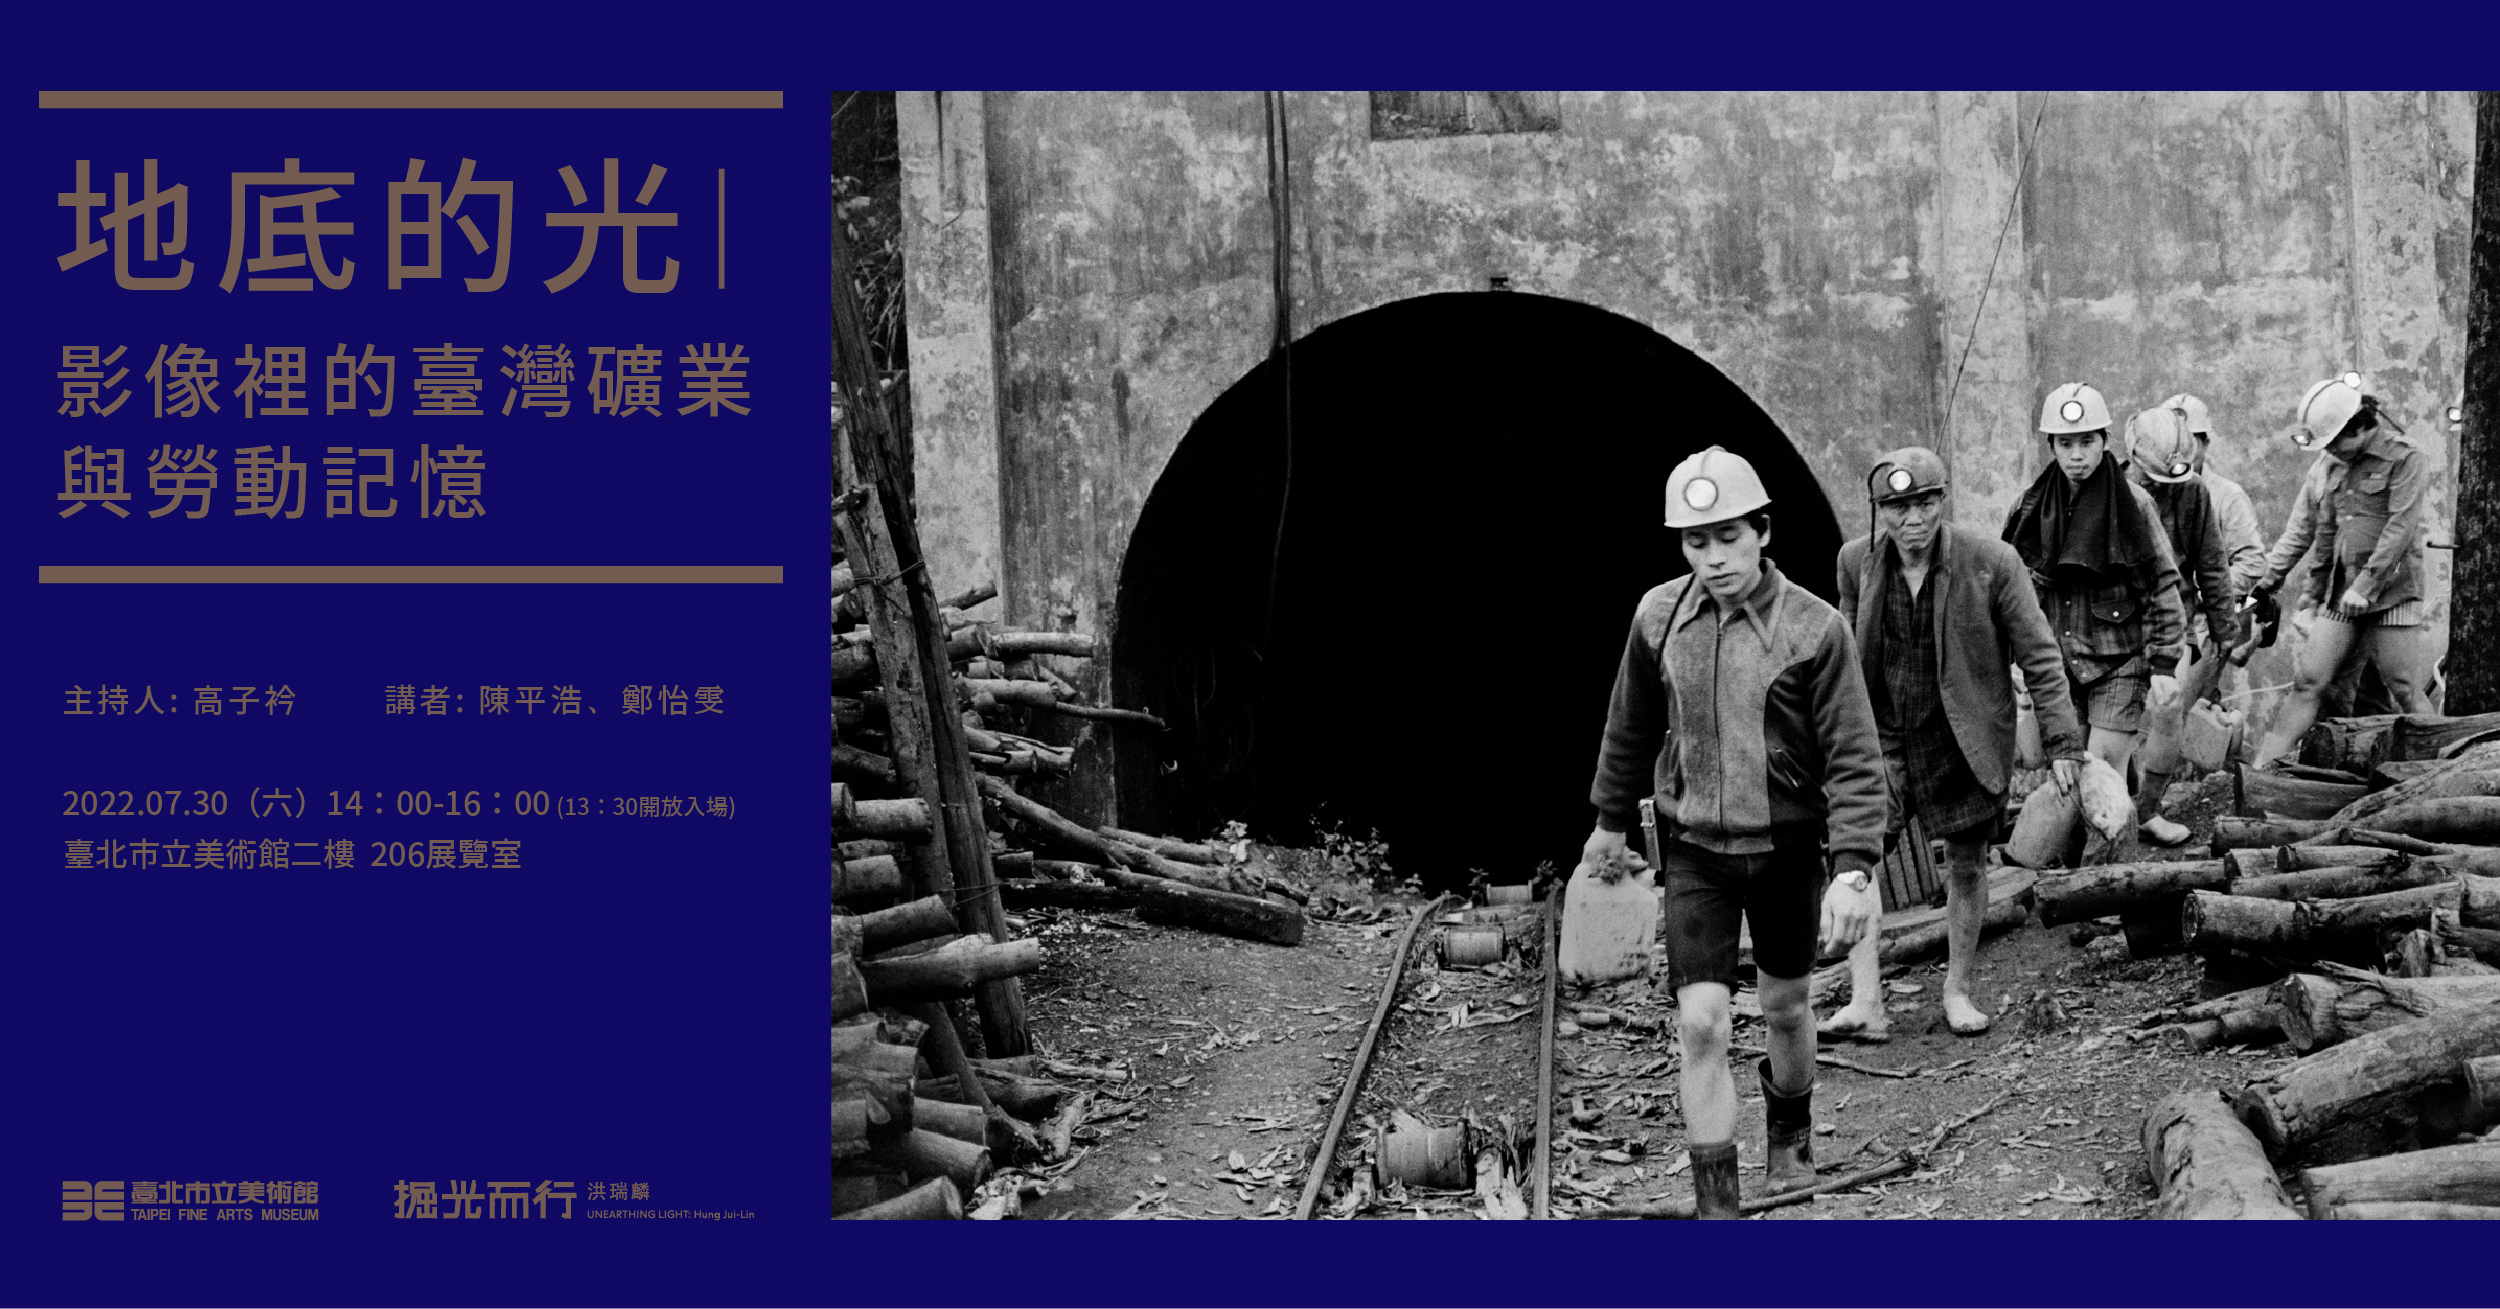 準備入坑的礦工。（1979年彭春夫攝）Miners waiting to enter the tunnel. (photographed by Peng Chun-Fu in 1979) 的圖說